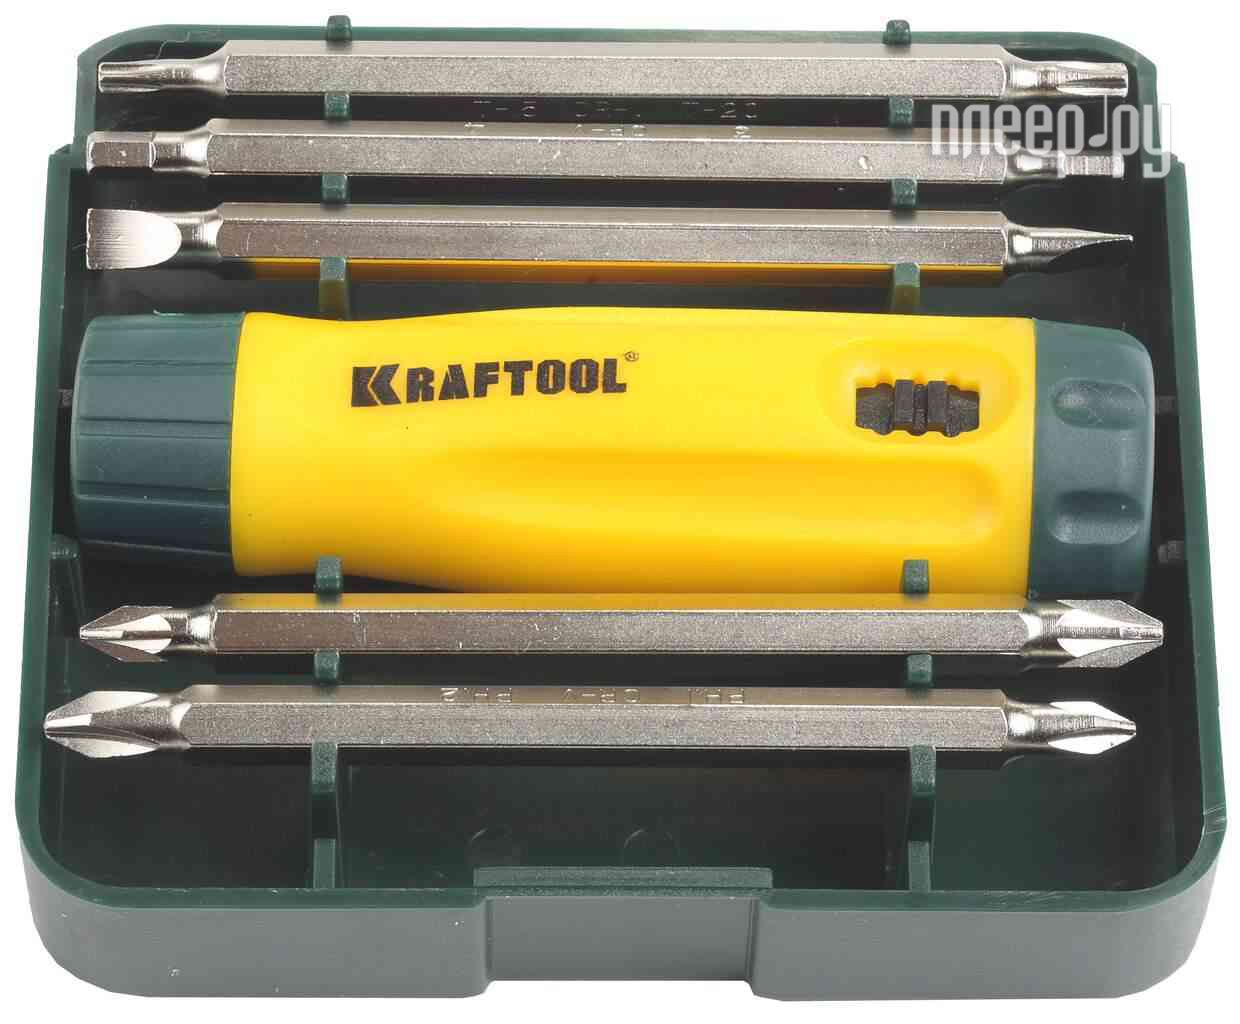  Kraftool 26141-H6 